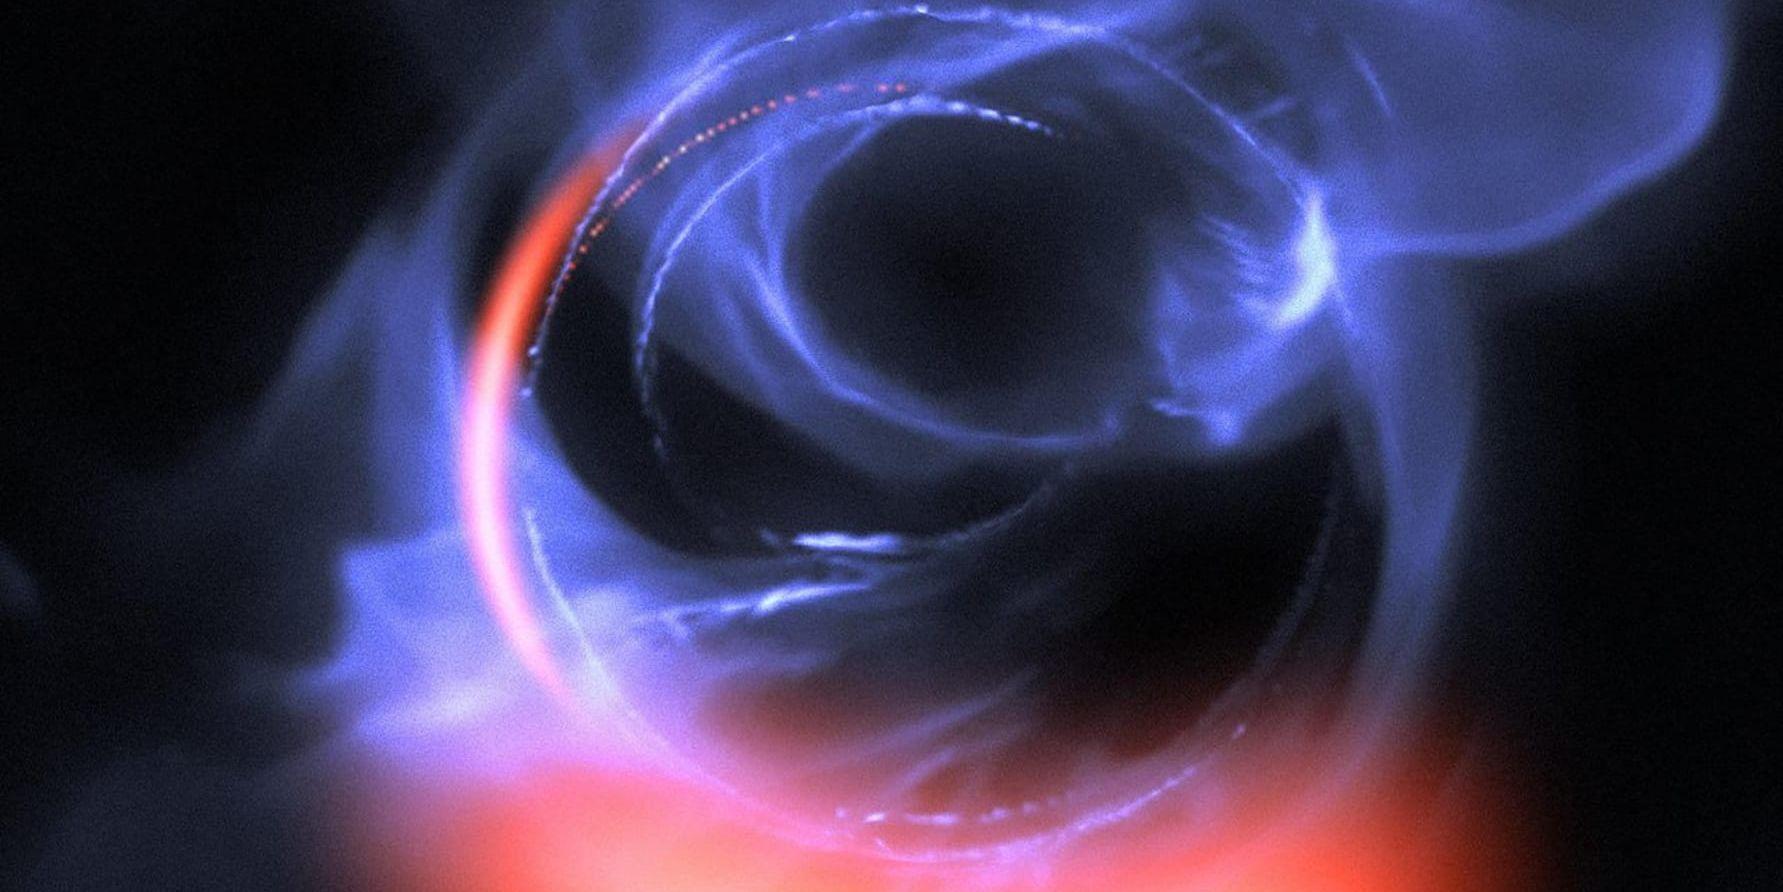 Forskare har analyserat cirkulerande gas som är på väg att sugas in i det supertunga svarta hål som finns i Vintergatans mitt, något denna illustration försöker visualisera.